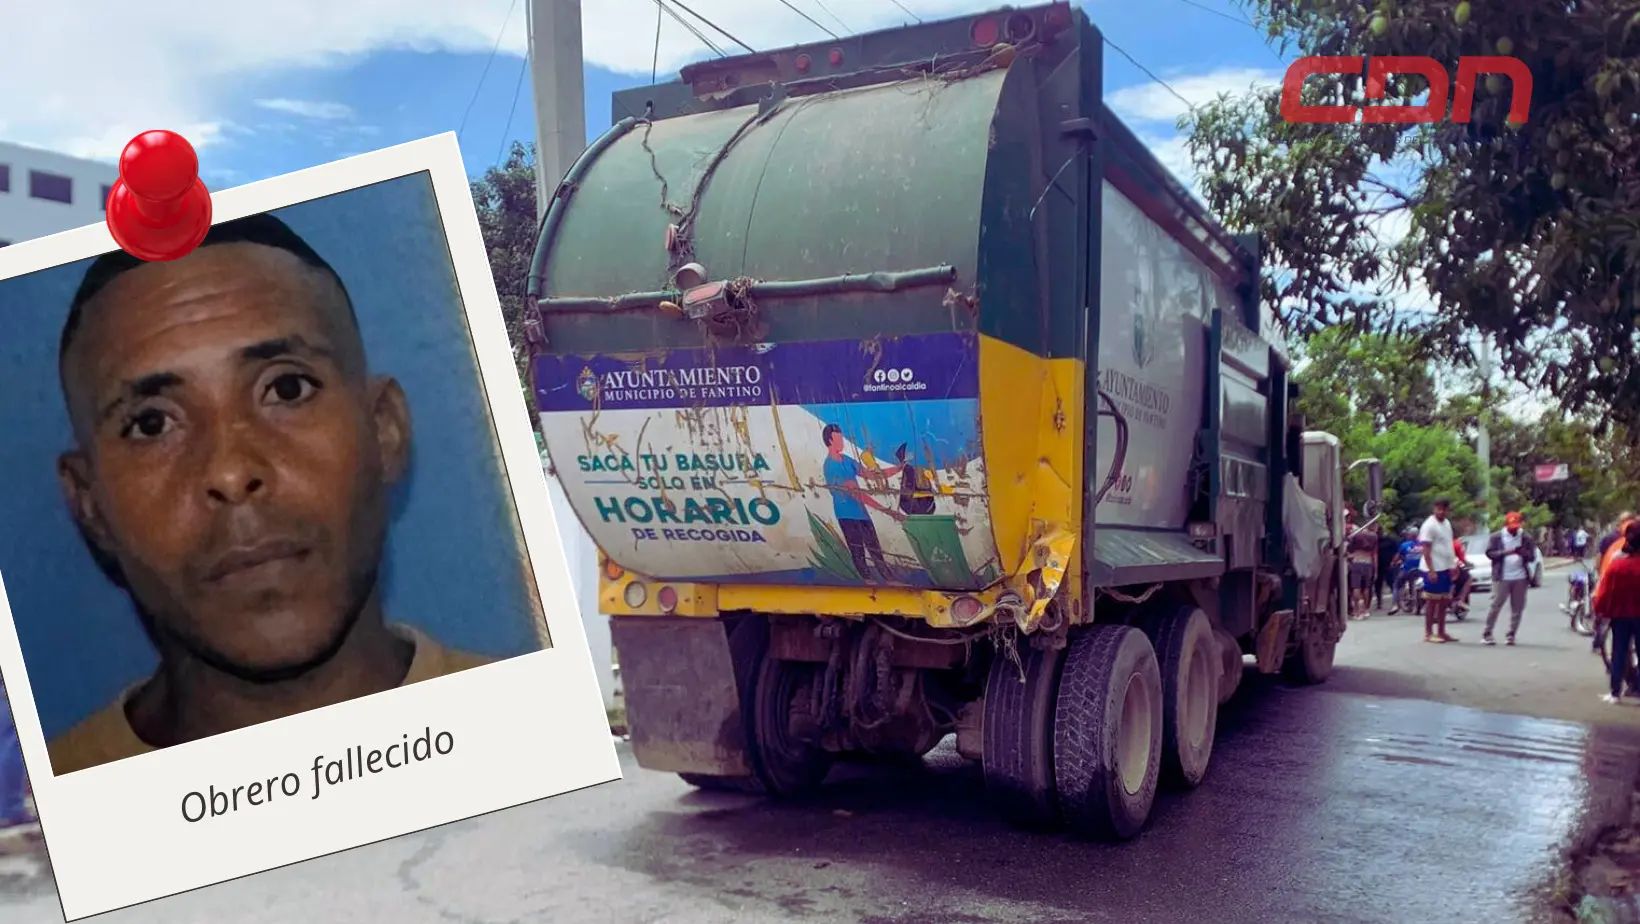 Domingo Lopez, obrero que result muerto durante su jornada de trabajo. Foto CDN Digital